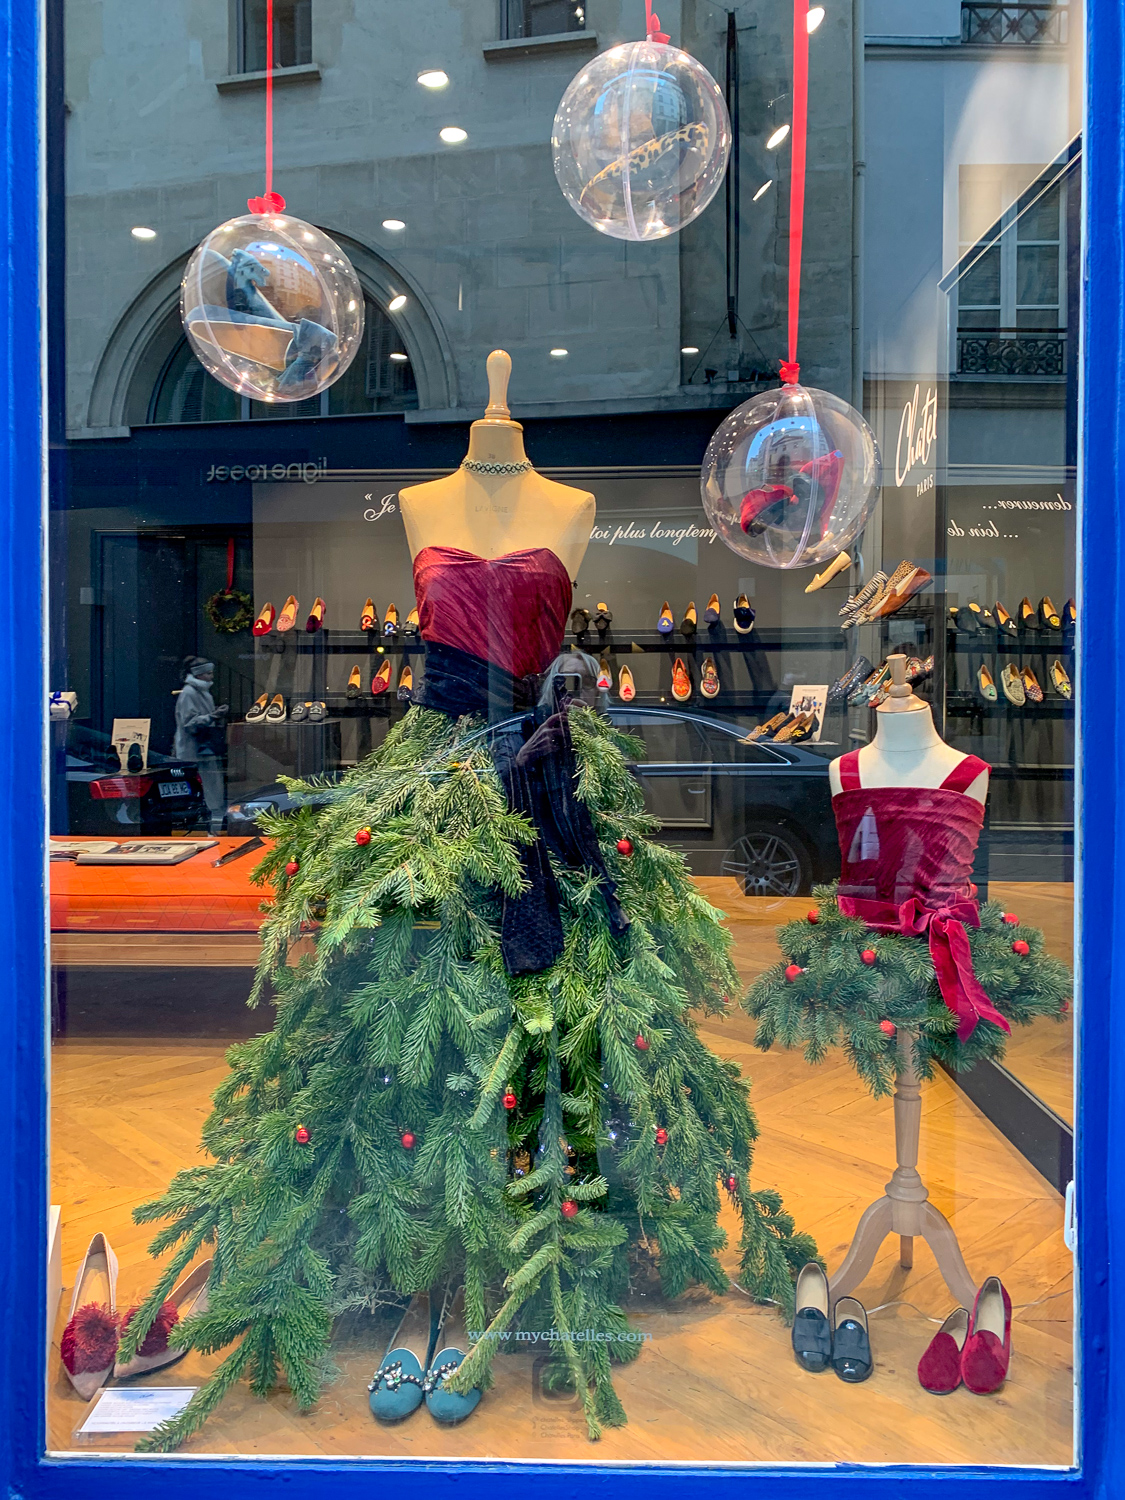 Christmas window display at Chatelles shoes, Paris. More at une femme d'un certain age.